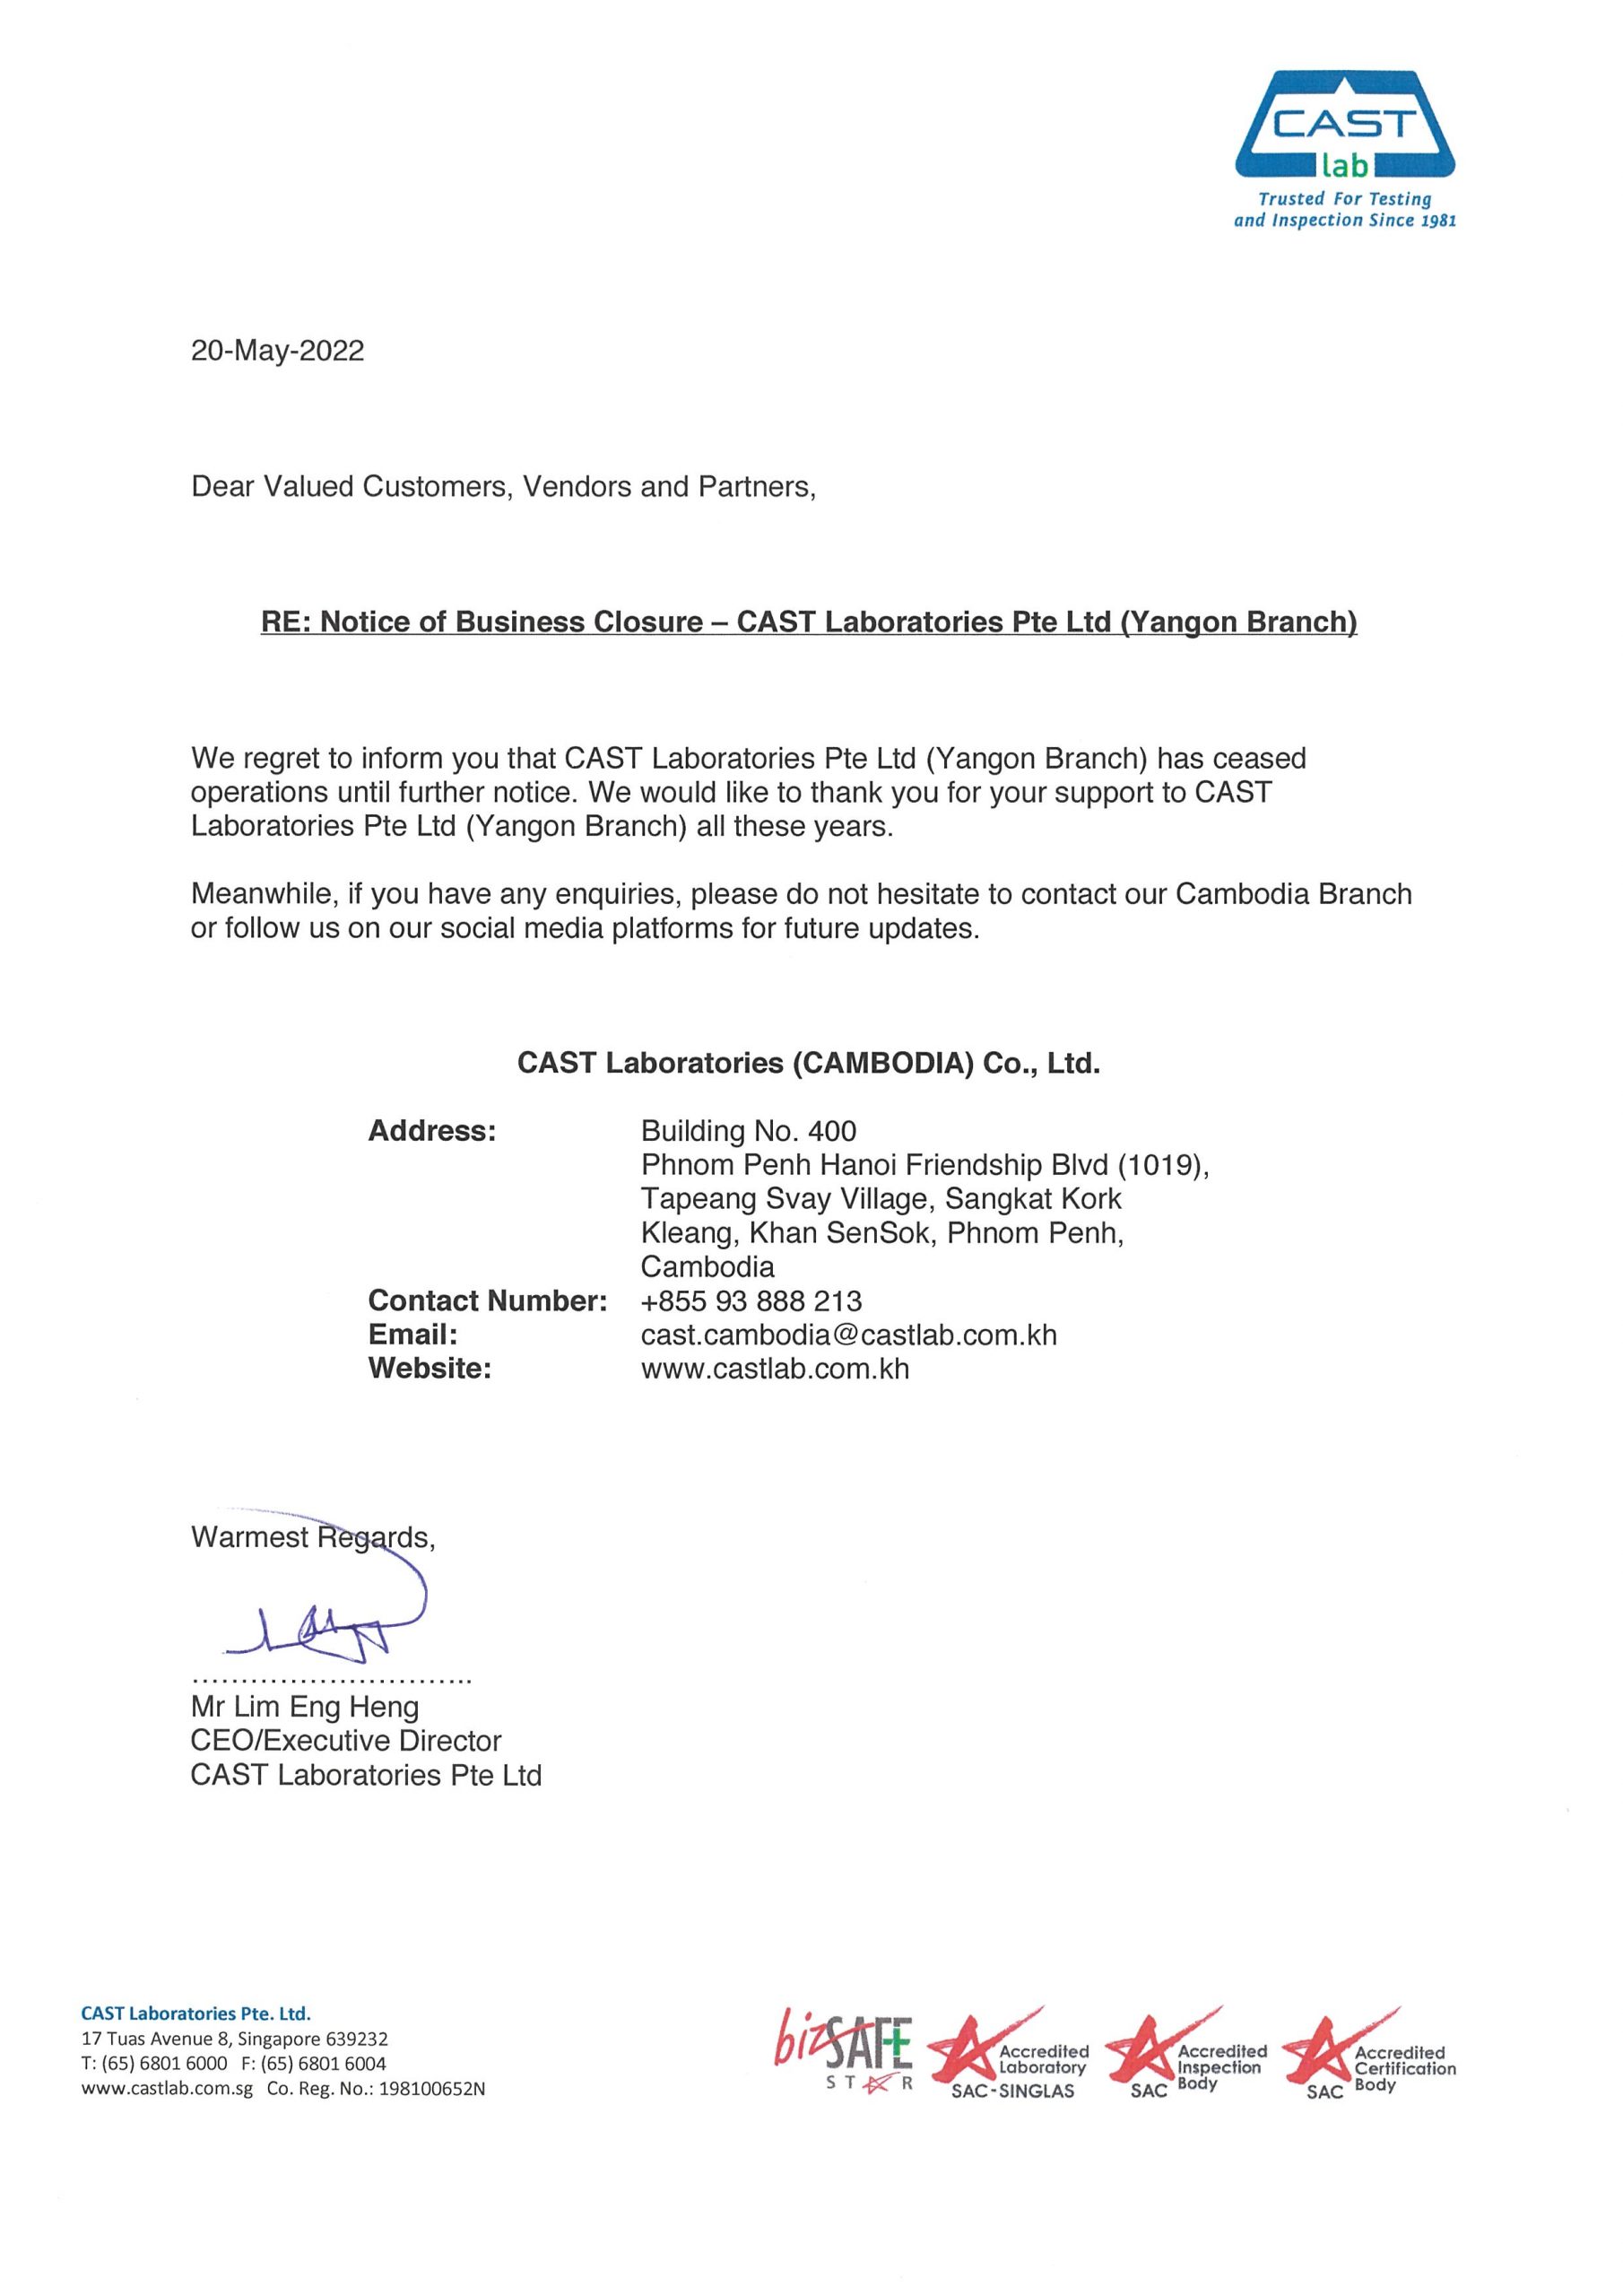 Notice of Business Closure - CAST Laboratories Pte Ltd (Yangon Branch)